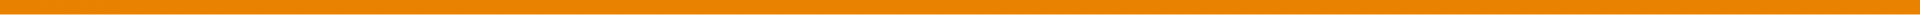 Orange DividerC